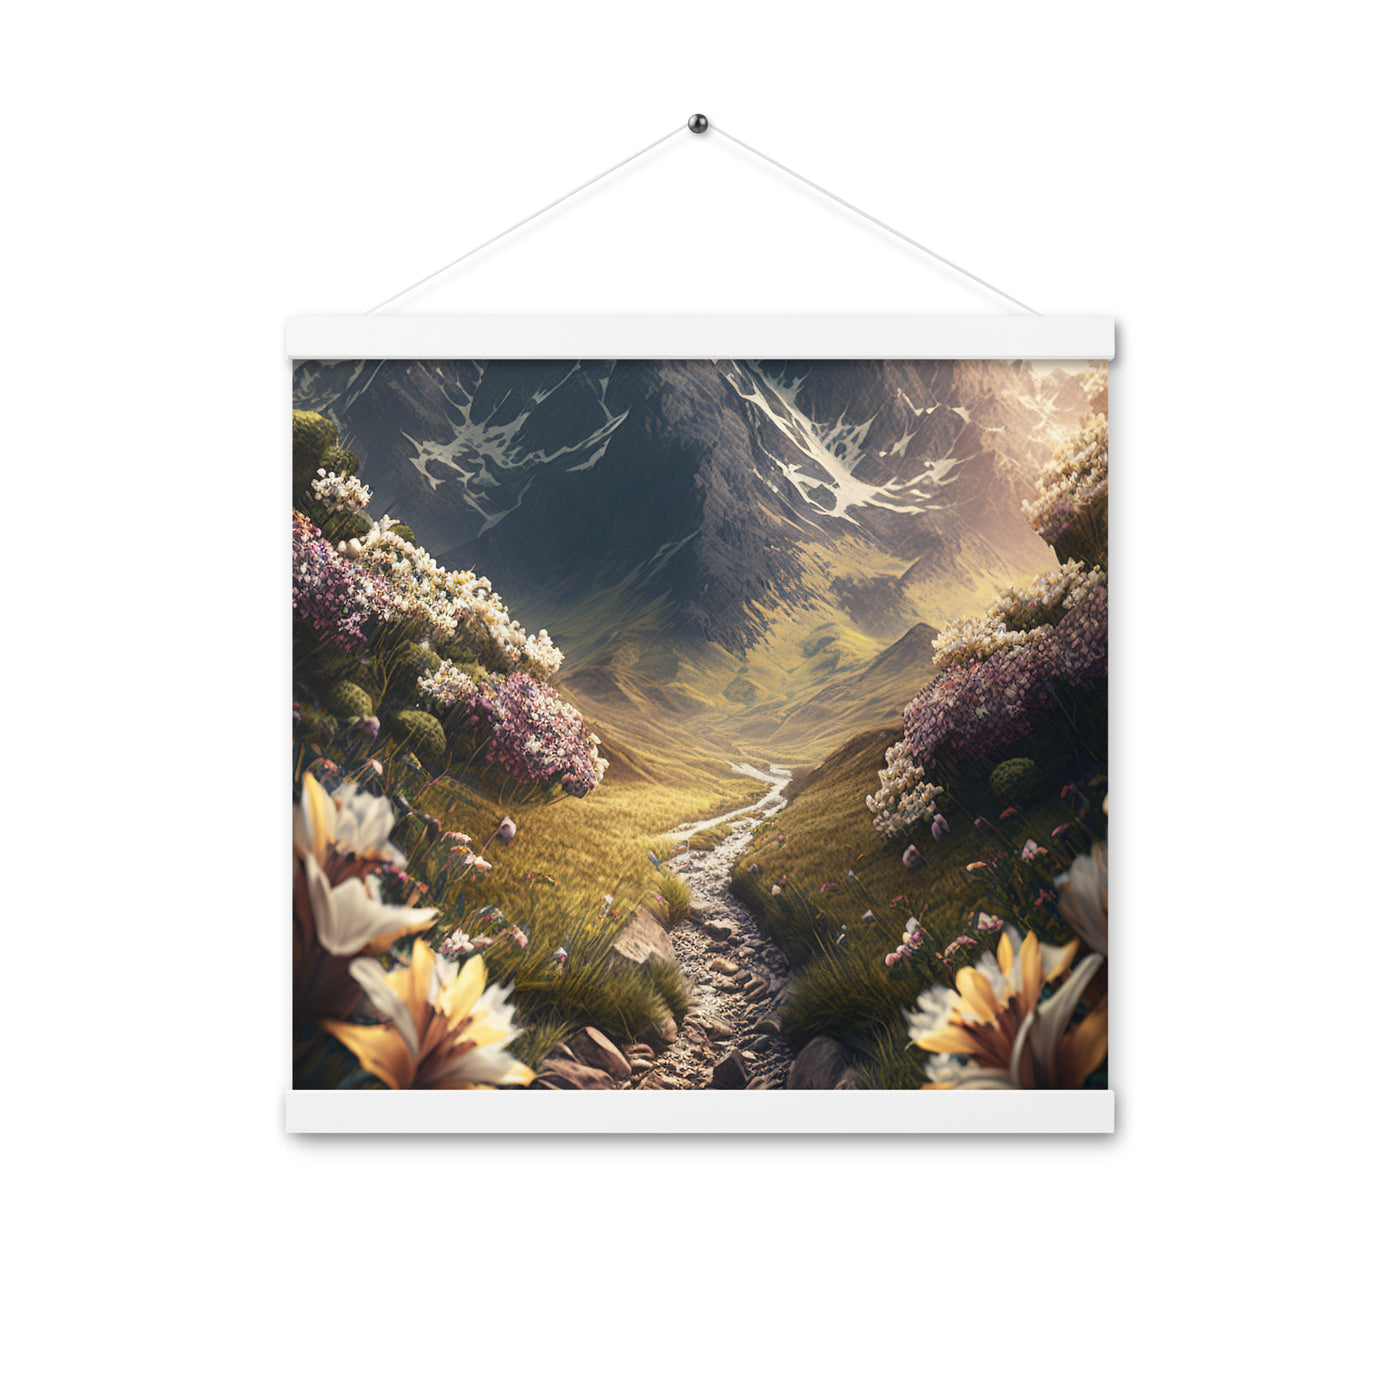 Epischer Berg, steiniger Weg und Blumen - Realistische Malerei - Premium Poster mit Aufhängung berge xxx 40.6 x 40.6 cm